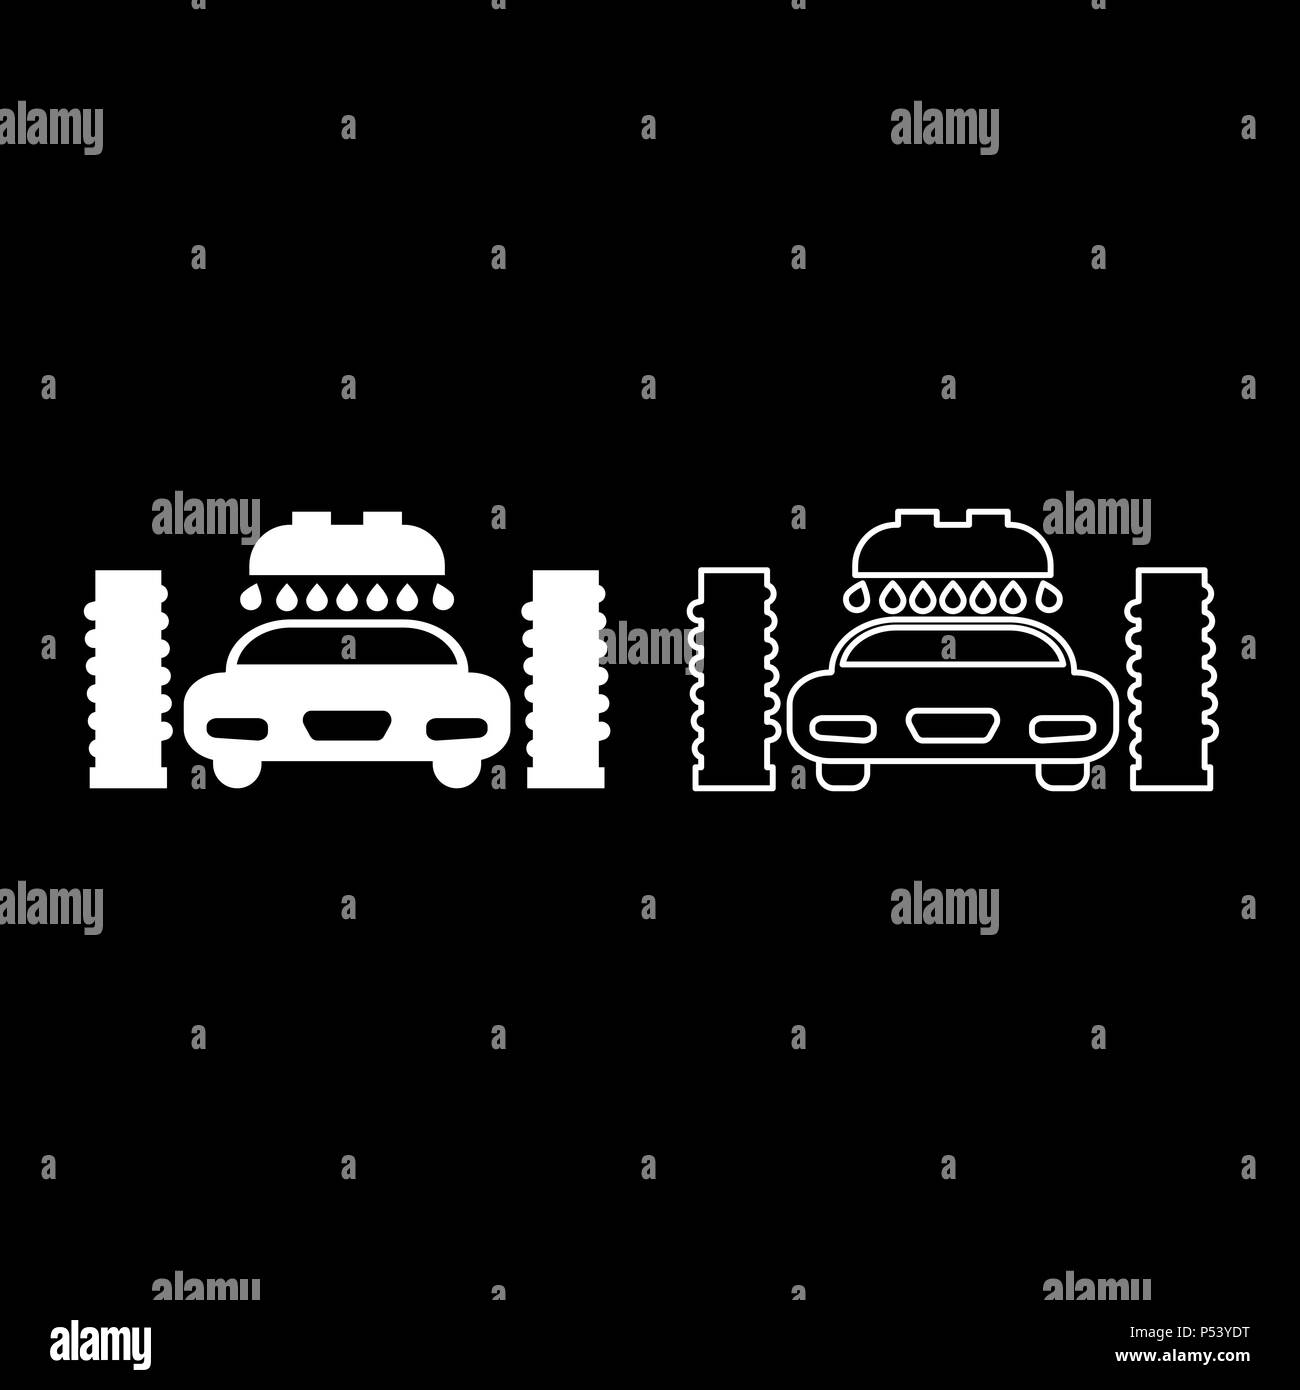 Reinigung Auto waschen Icon Set. Einfache Reinigung Auto waschen